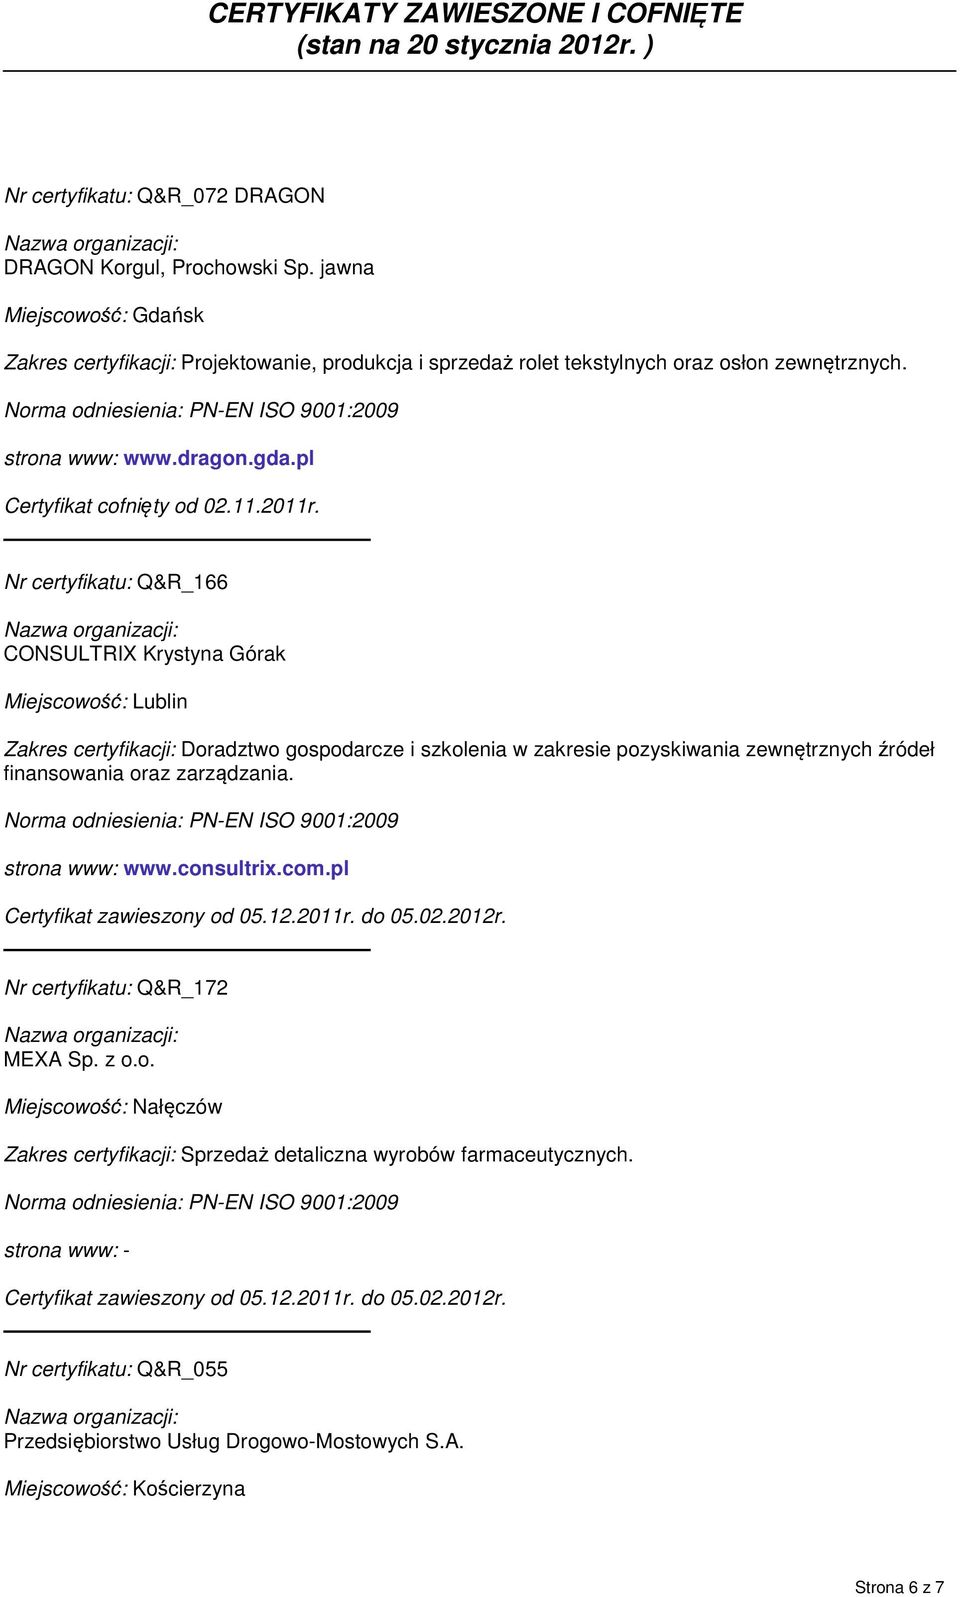 Nr certyfikatu: Q&R_166 CONSULTRIX Krystyna Górak Miejscowość: Lublin Zakres certyfikacji: Doradztwo gospodarcze i szkolenia w zakresie pozyskiwania zewnętrznych źródeł finansowania oraz zarządzania.